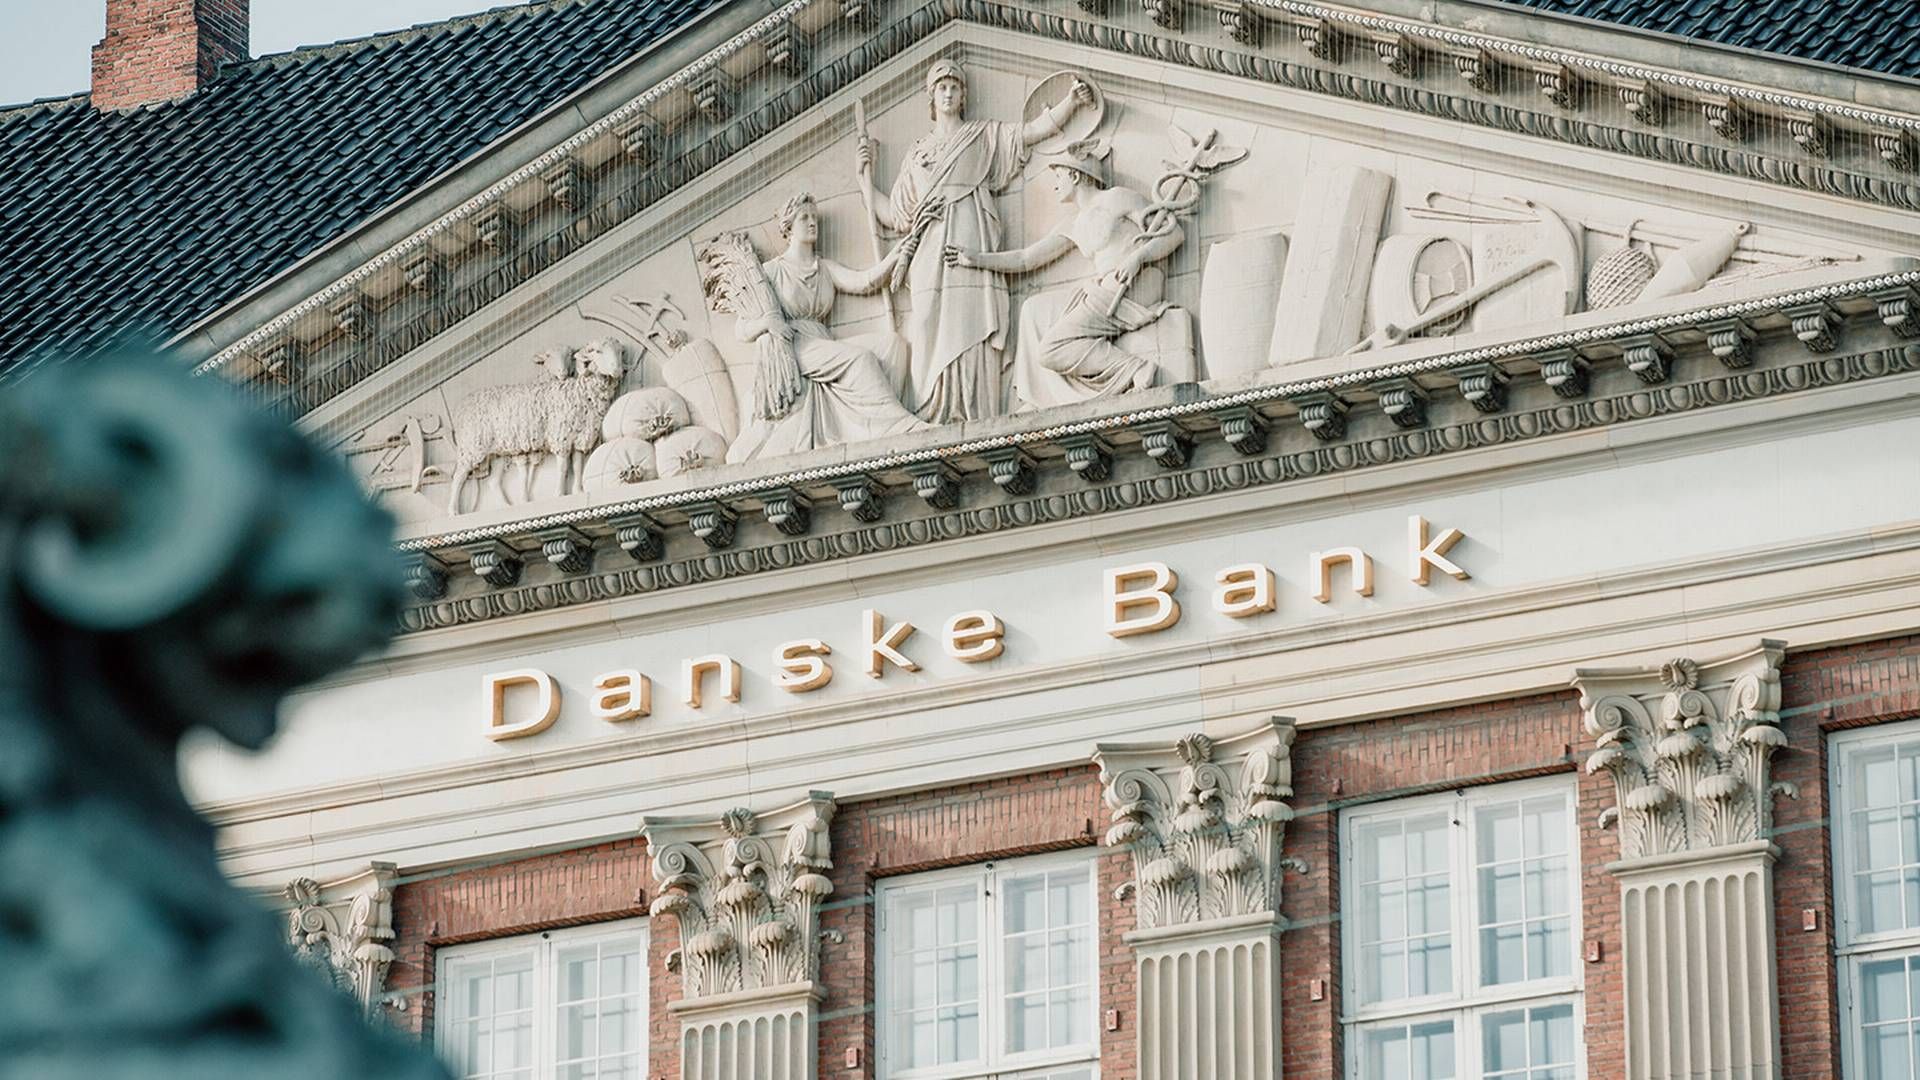 Folk har over en bred kam mindre tiltro til Danske Bank end de fleste andre virksomheder i målingen. | Foto: Philip Madsen